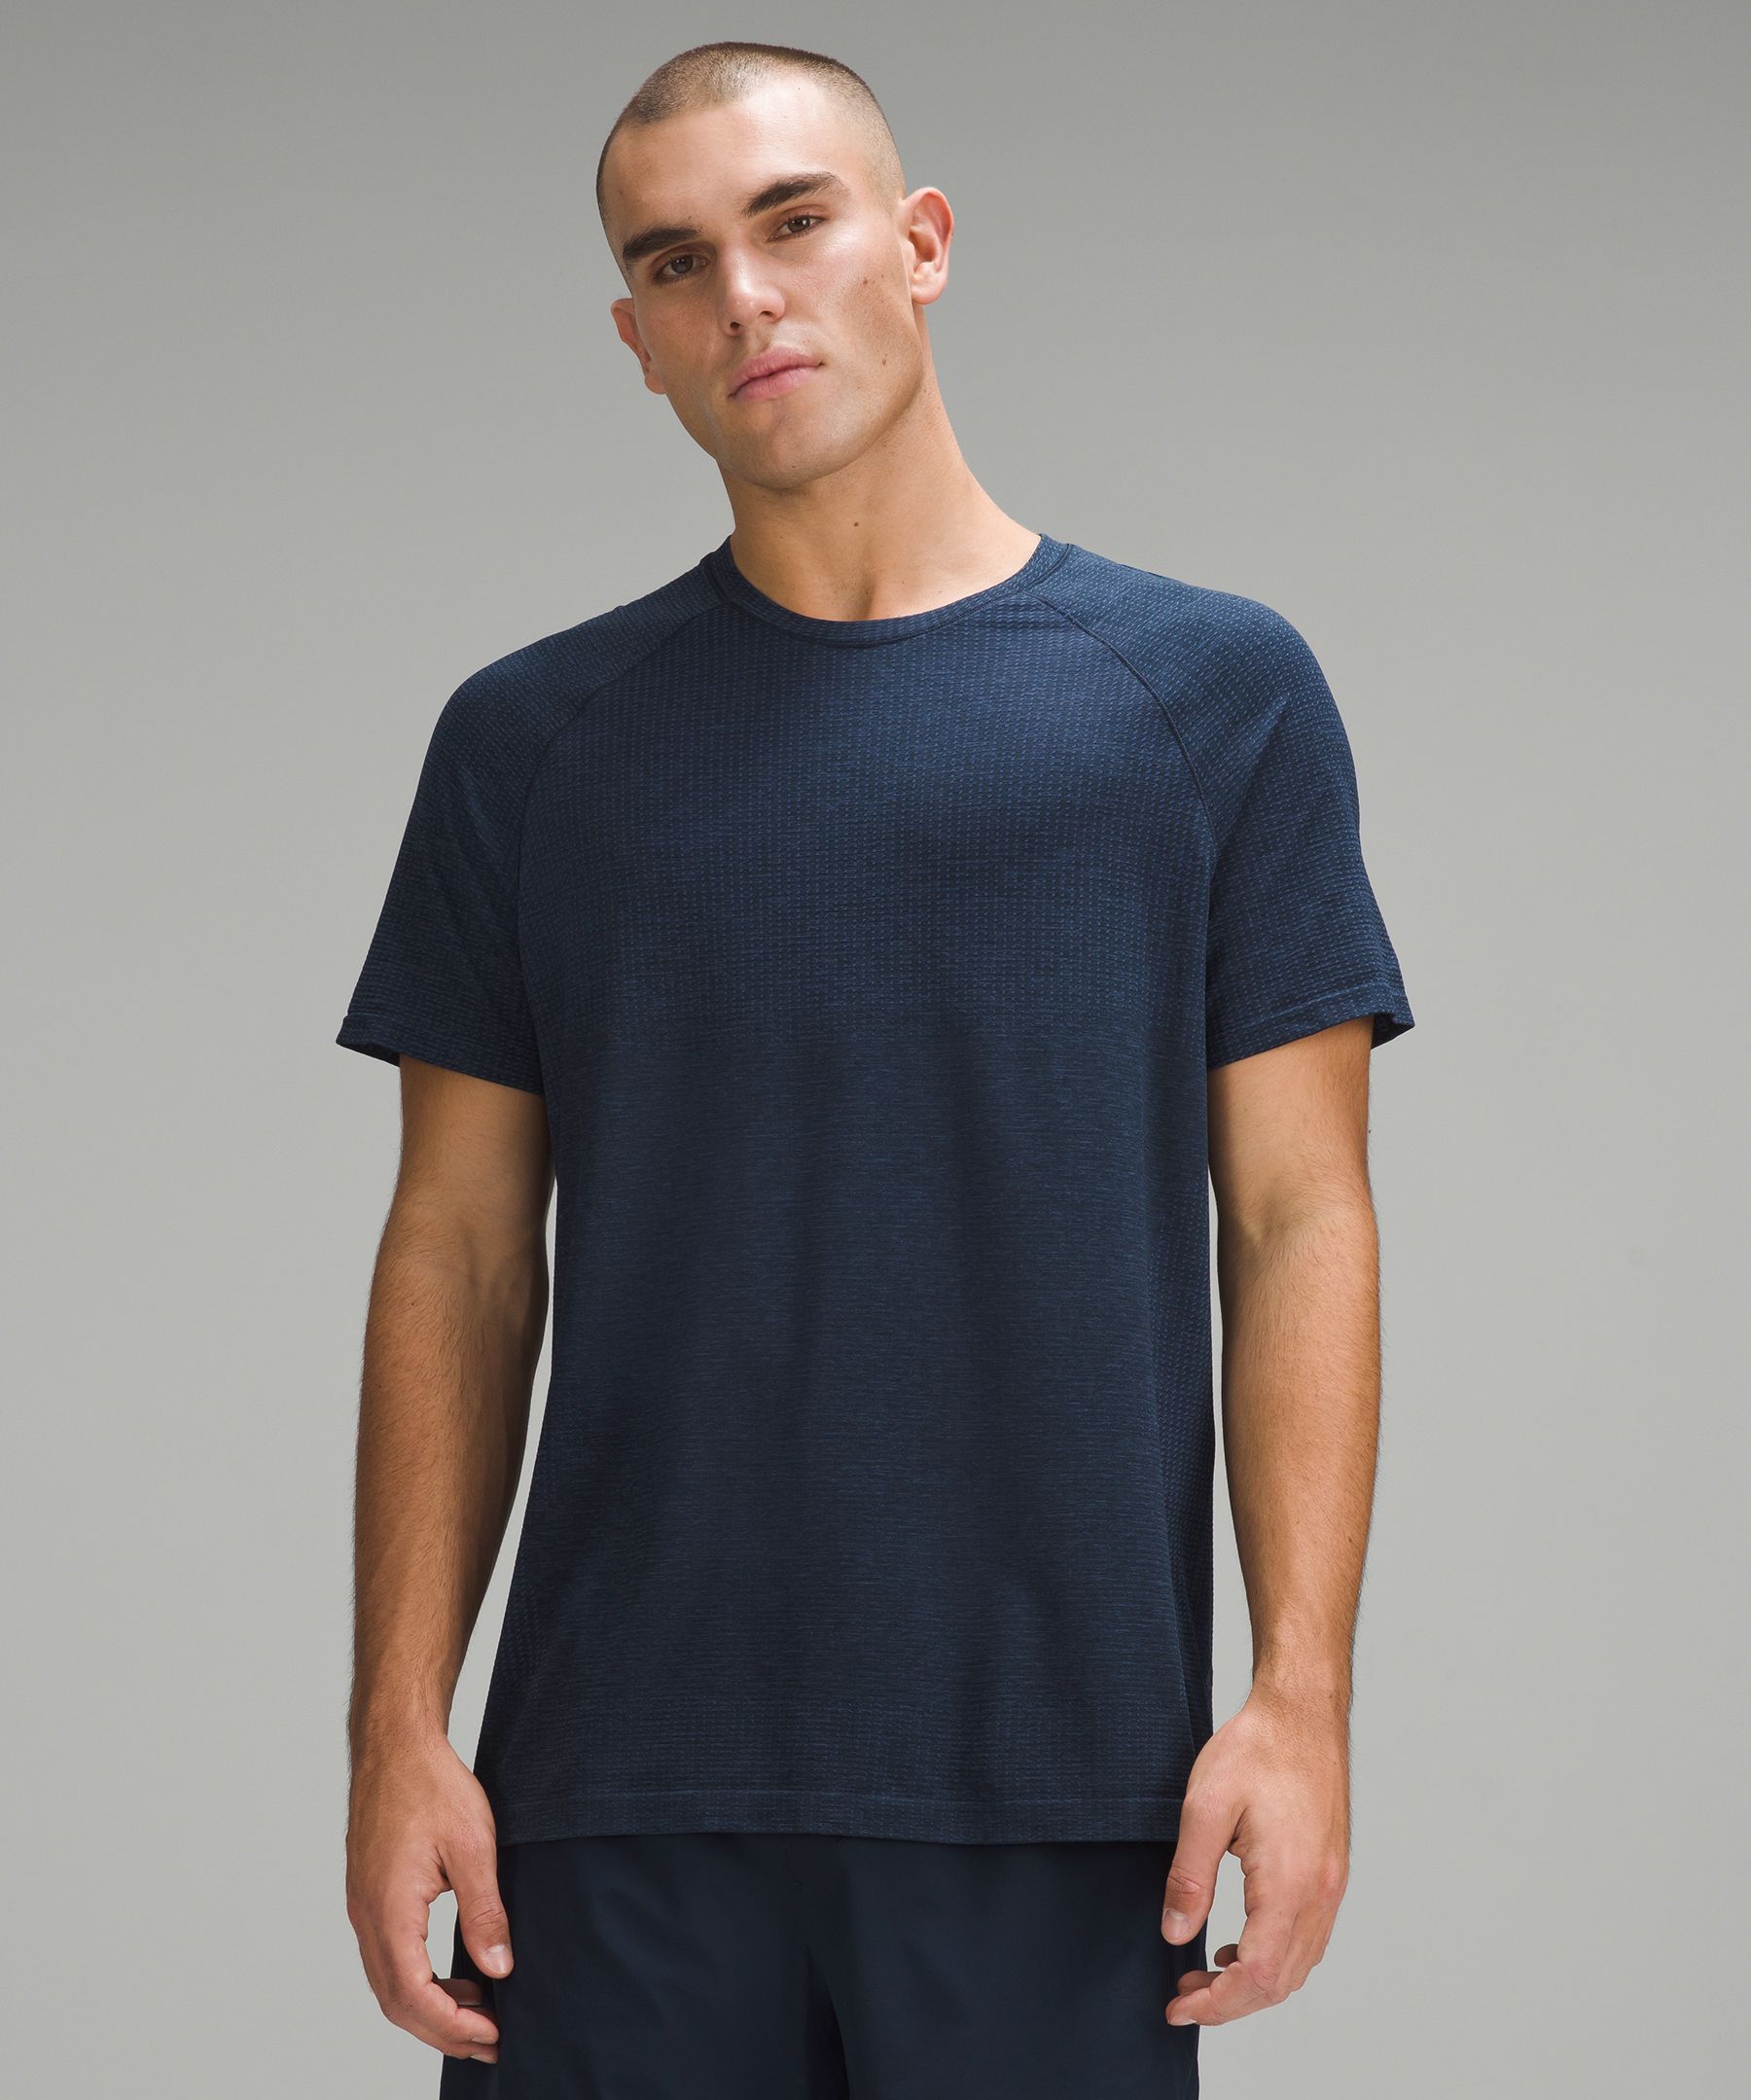 Metal Vent Tech Short-Sleeve Shirt | Men's Short Sleeve Shirts 